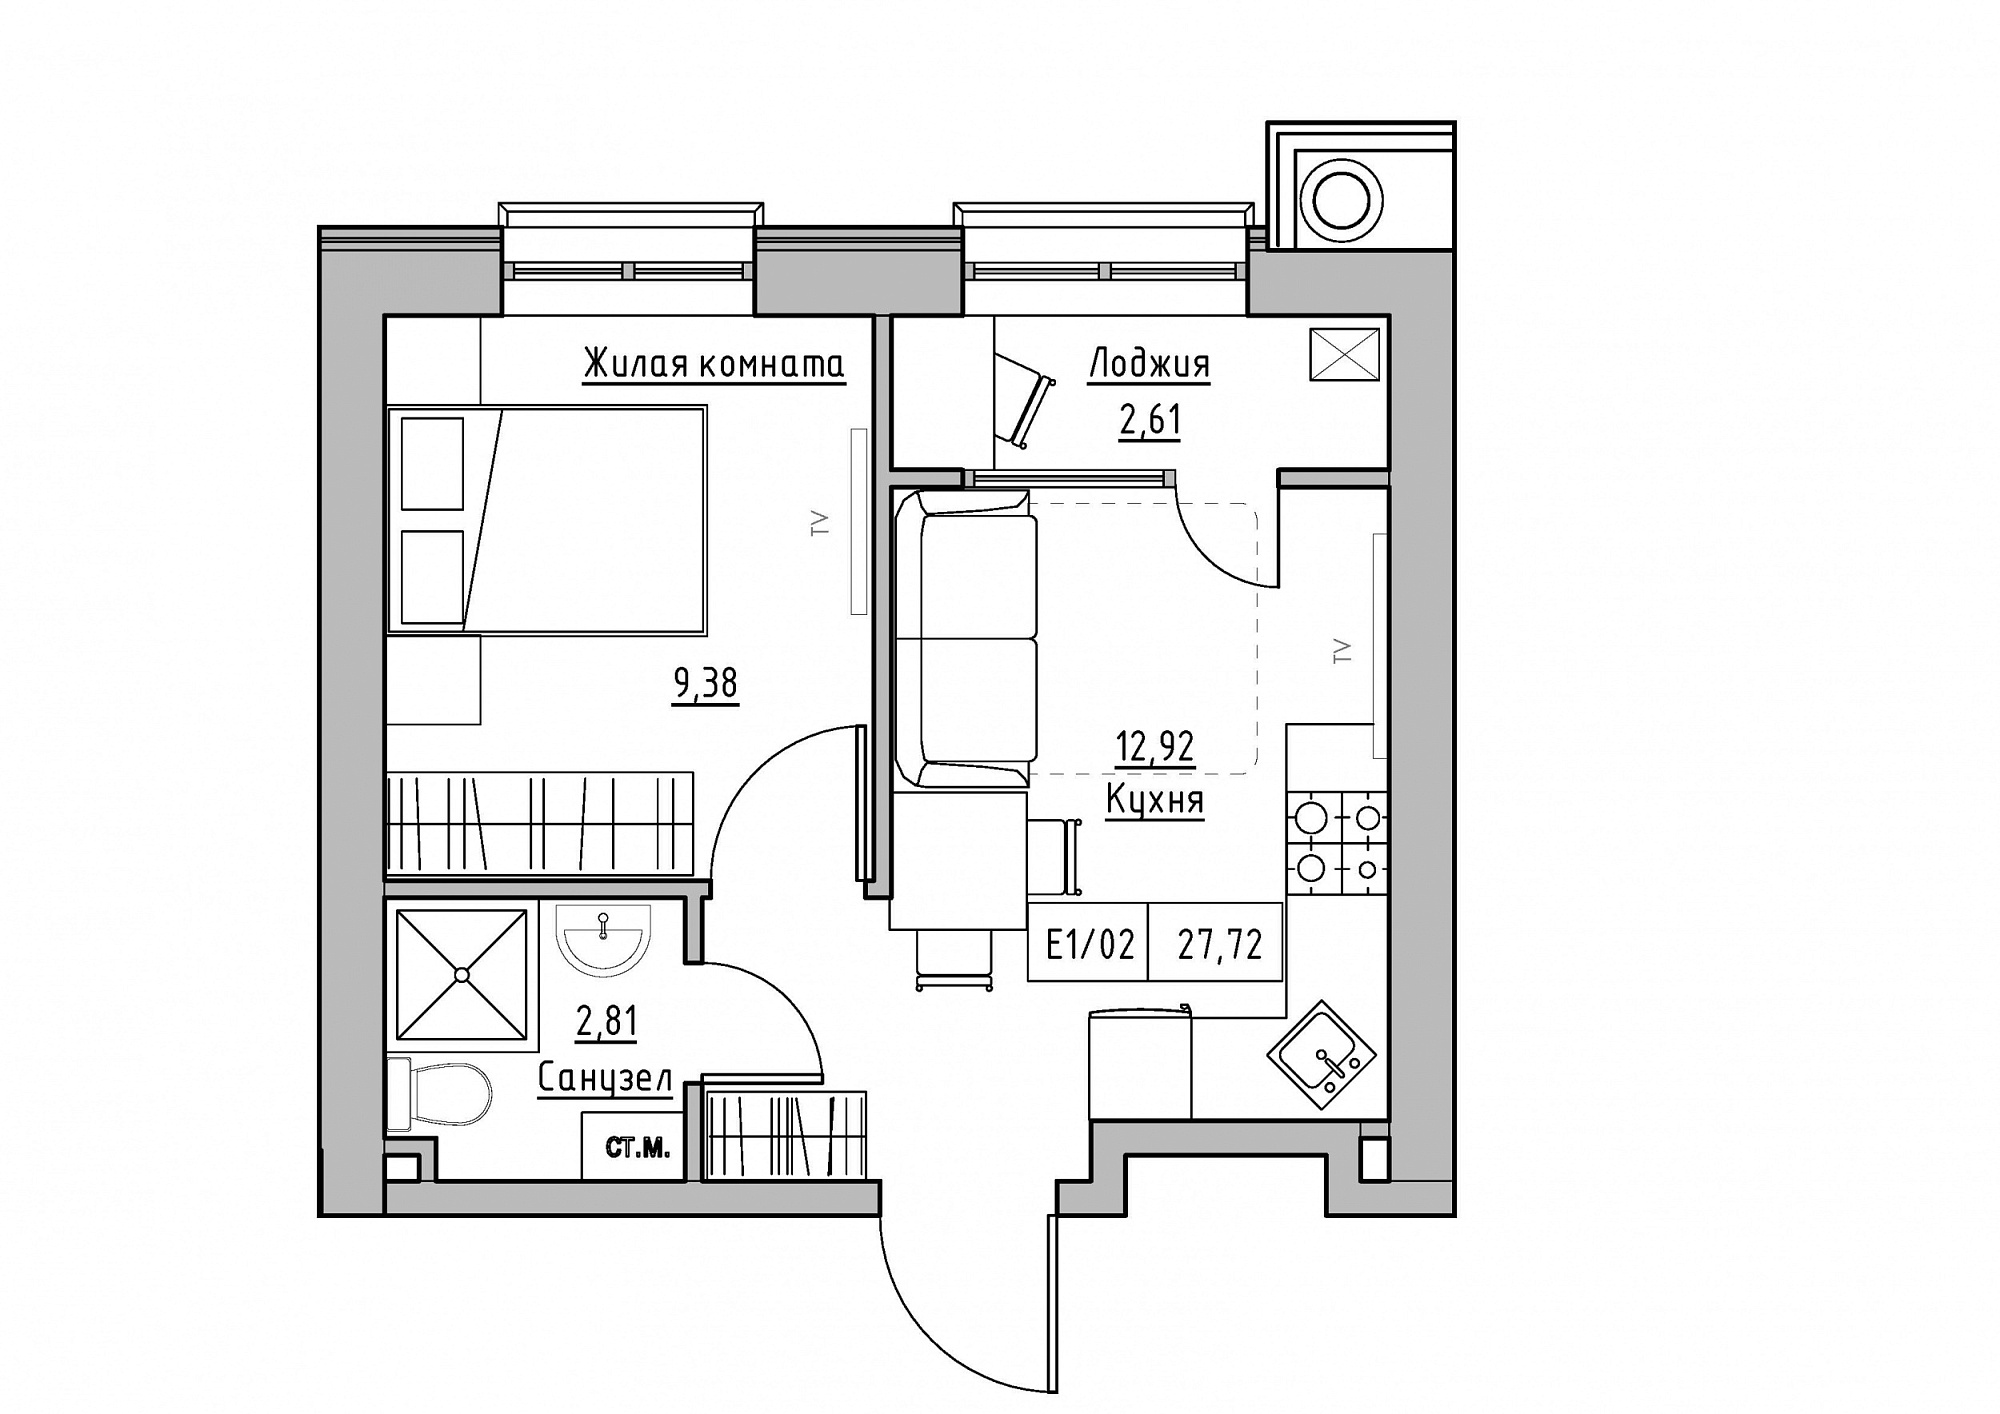 Планування 1-к квартира площею 27.72м2, KS-012-04/0001.